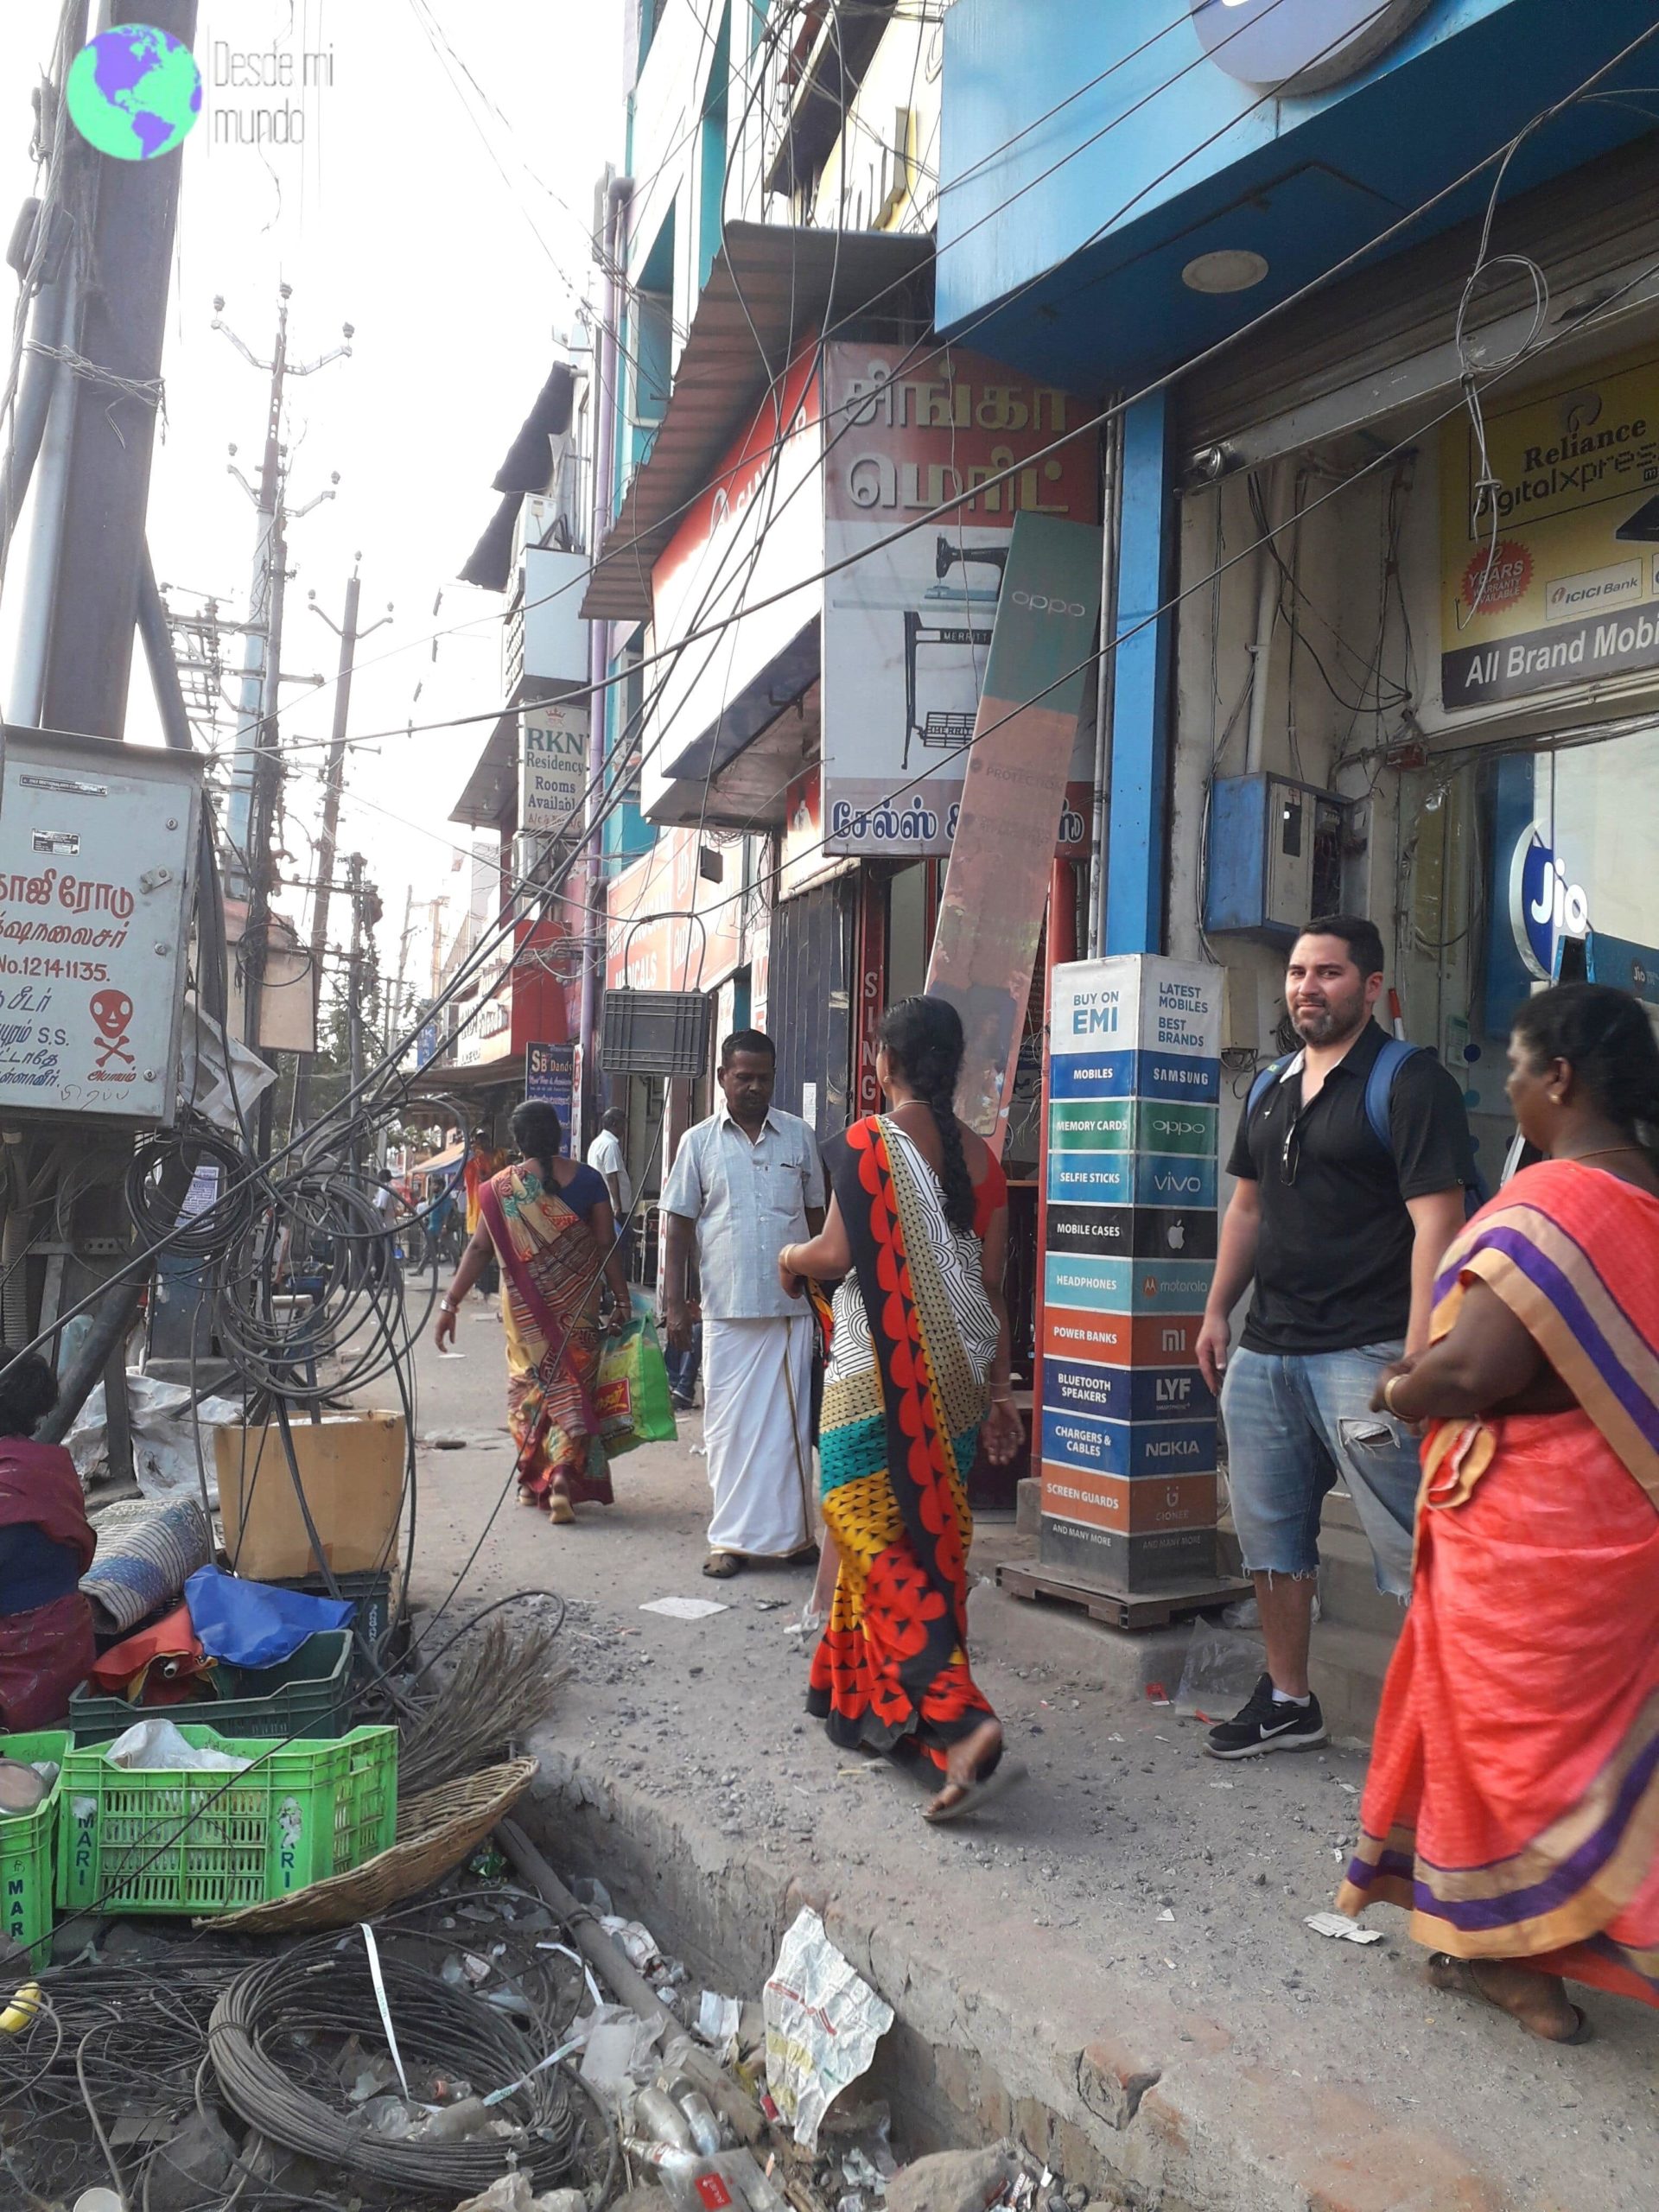 Caos en la calle - Madurai - Desde mi mundo blog de viajes